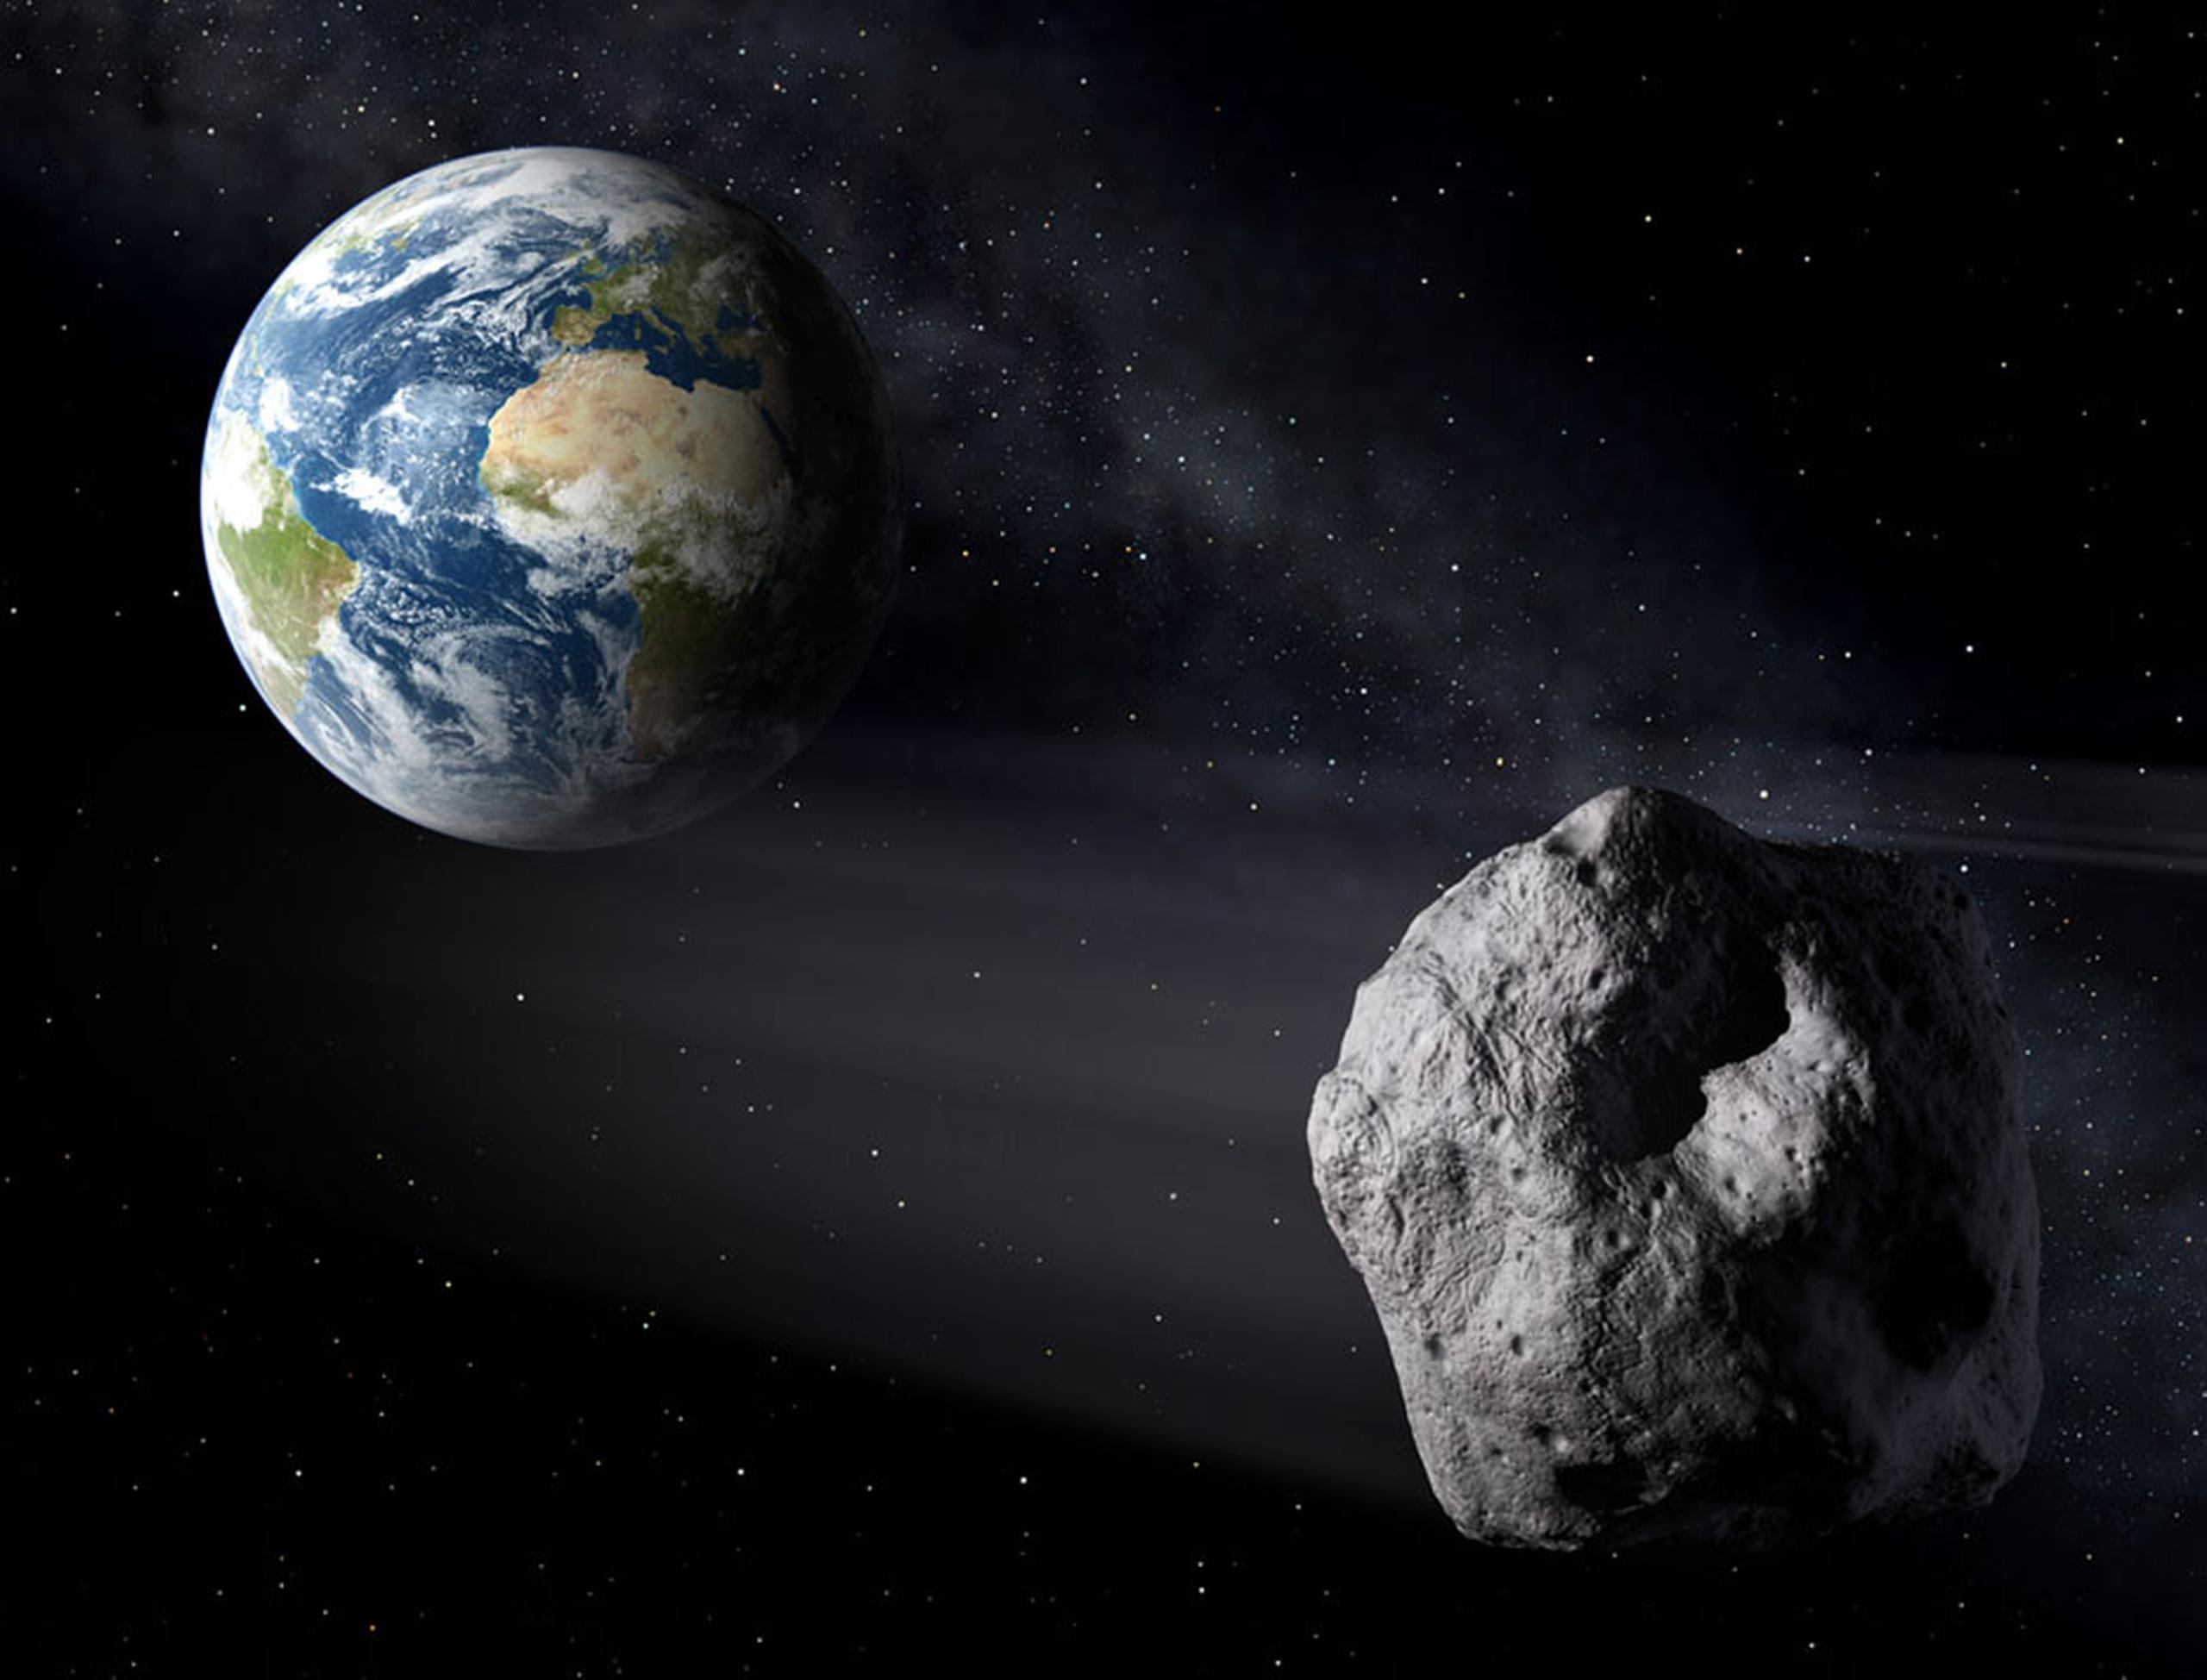 Se anticipa que el asteroide 2020 SW estará pasando a una distancia de unas 17,556 millas (28,254 km) de la Tierra, una distancia incluso más cercana que los satélites meteorológicos y de televisión.